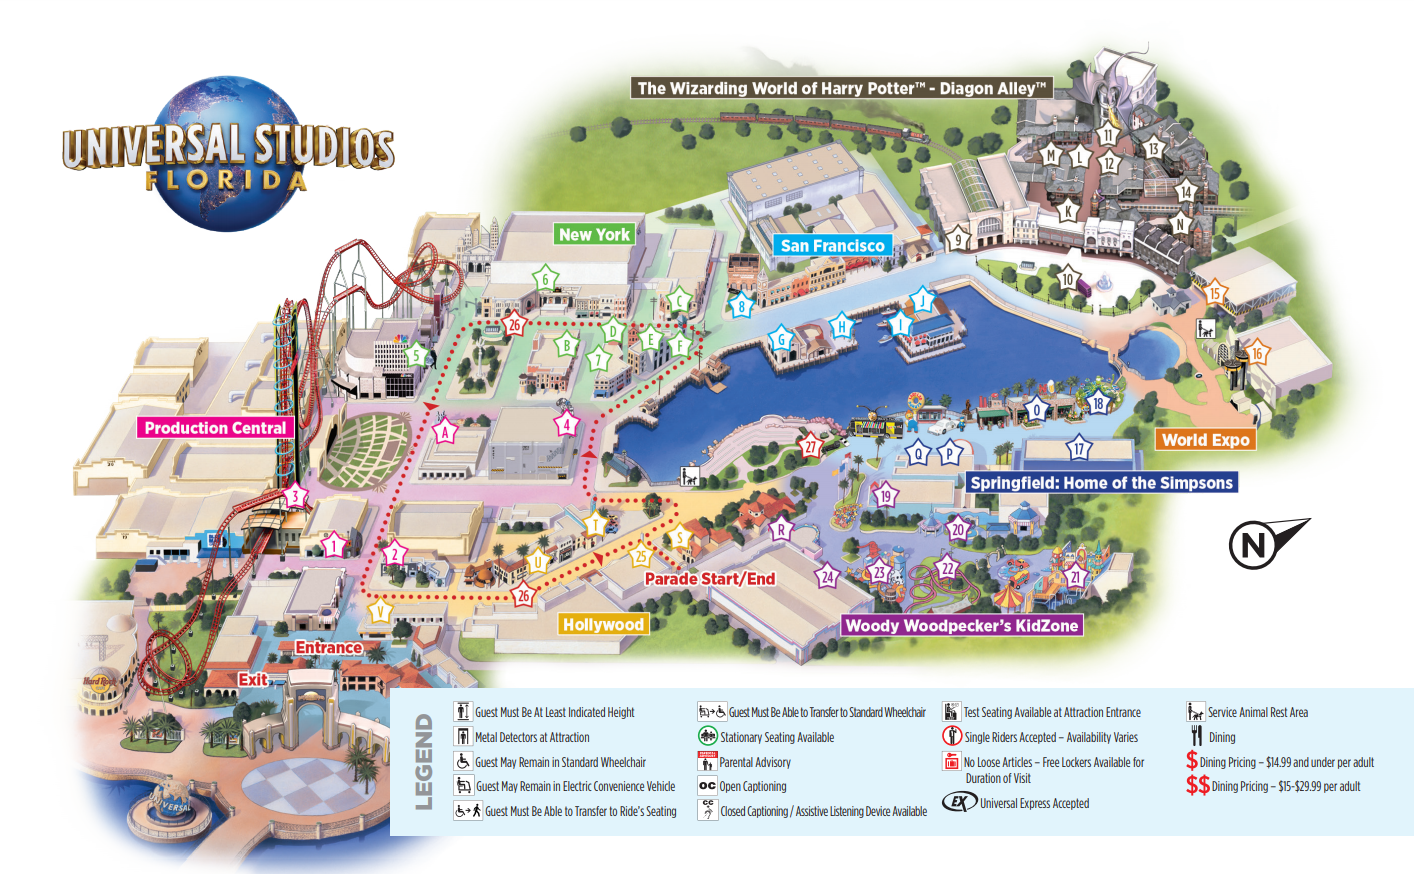 Esse é o mapa do parque Universal Studios Florida. O Shrek 4-D fica na "Production Central".